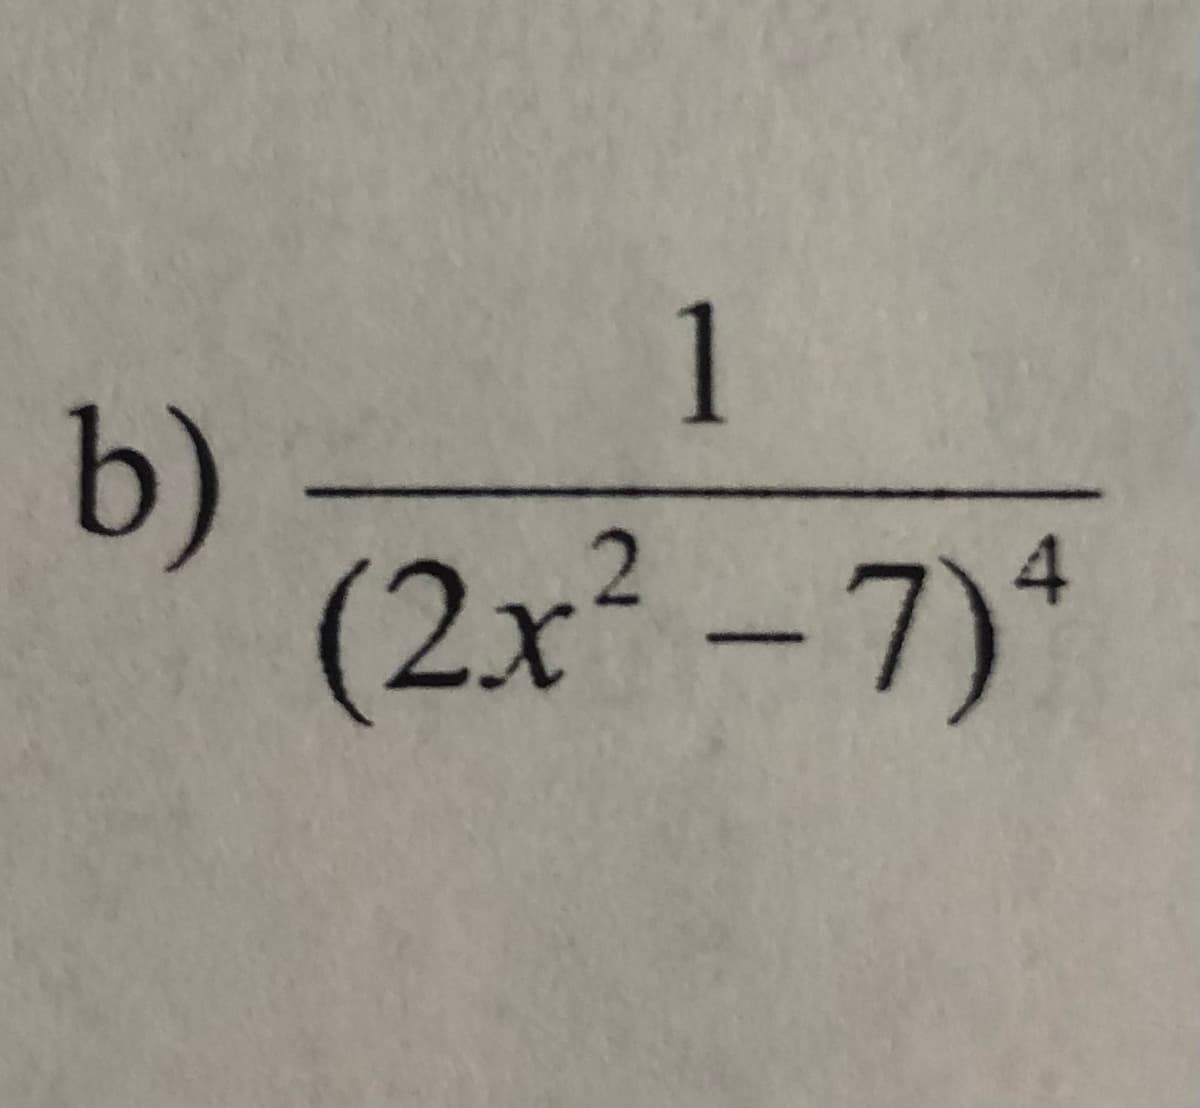 1
b)
(2x²-7)*
